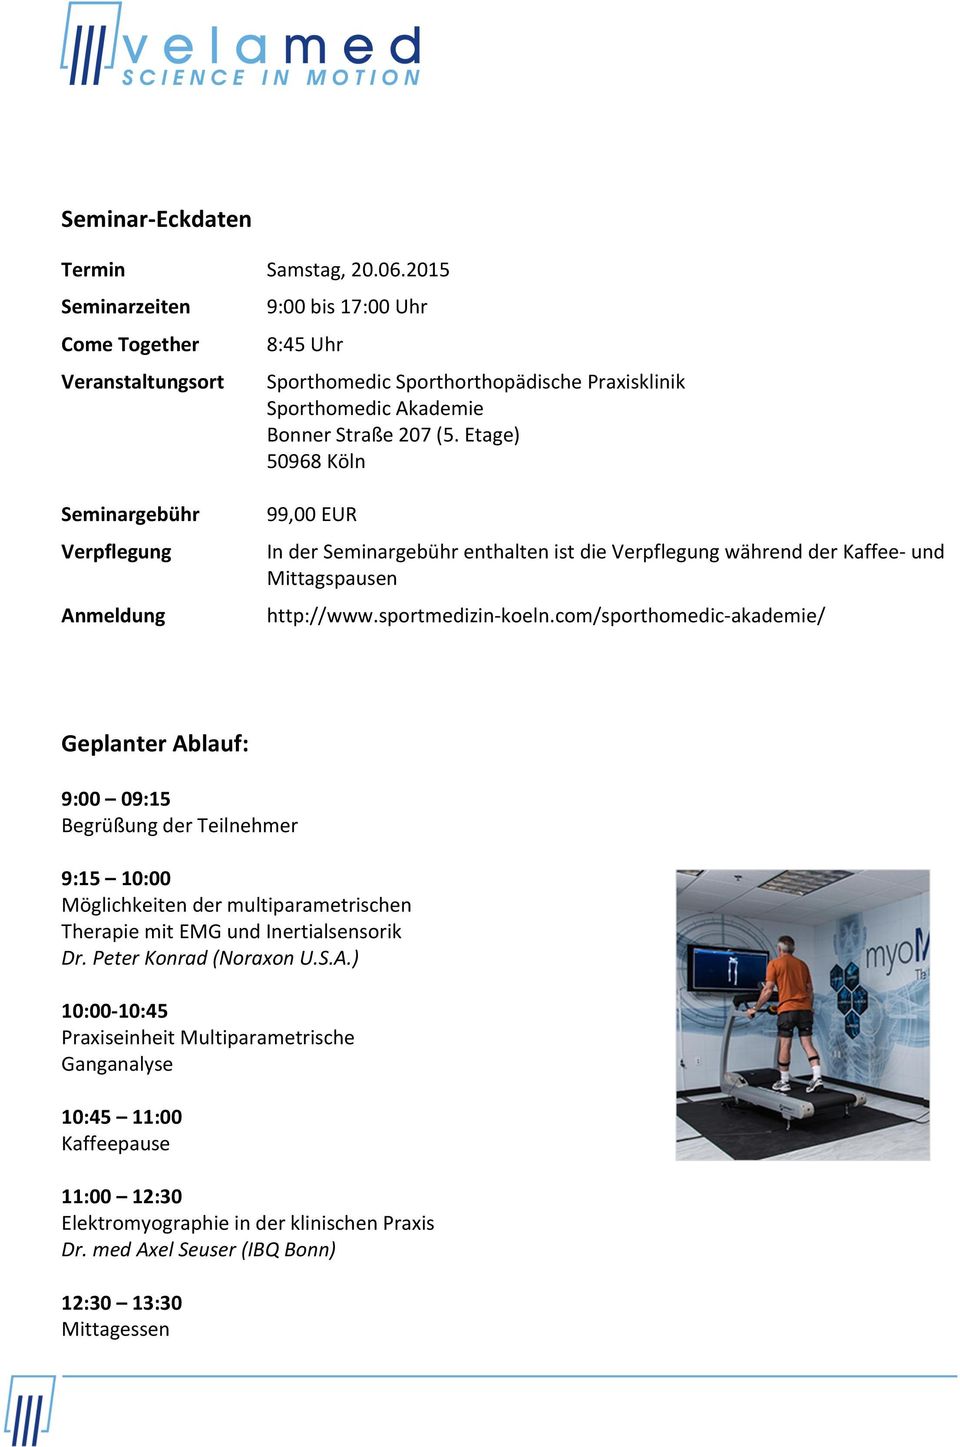 Etage) 50968 Köln 99,00 EUR In der Seminargebühr enthalten ist die Verpflegung während der Kaffee und Mittagspausen http://www.sportmedizinkoeln.